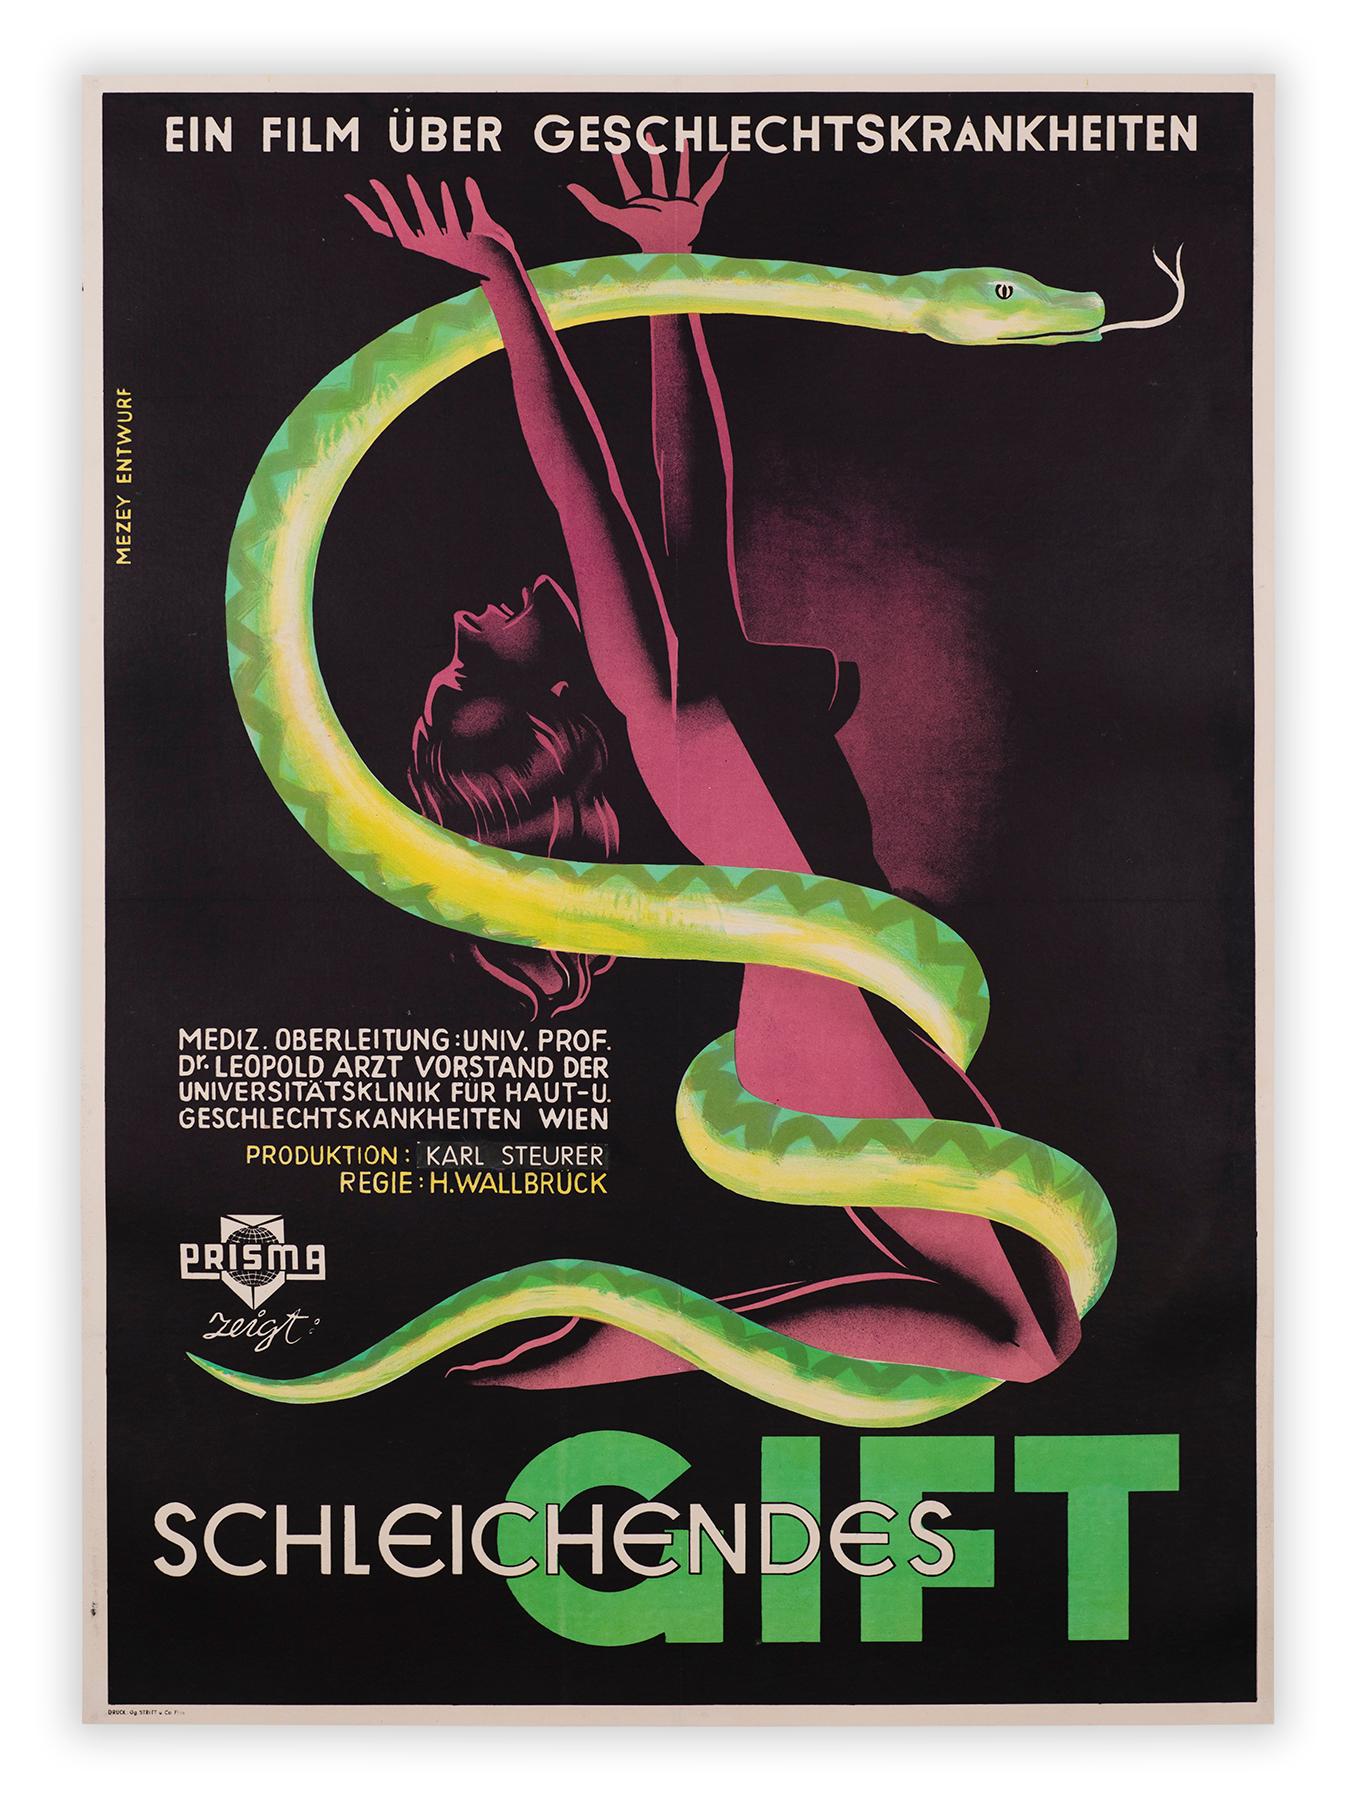 Gustav Mezeys lithografisches Filmplakat für Hermann Wallbrücks "sozialhygienischen" Film Schleichendes Gift zeigt eine verzweifelte Frau, die von einer räuberischen Schlange umschlungen wird. Ziel des Films war es, die österreichische